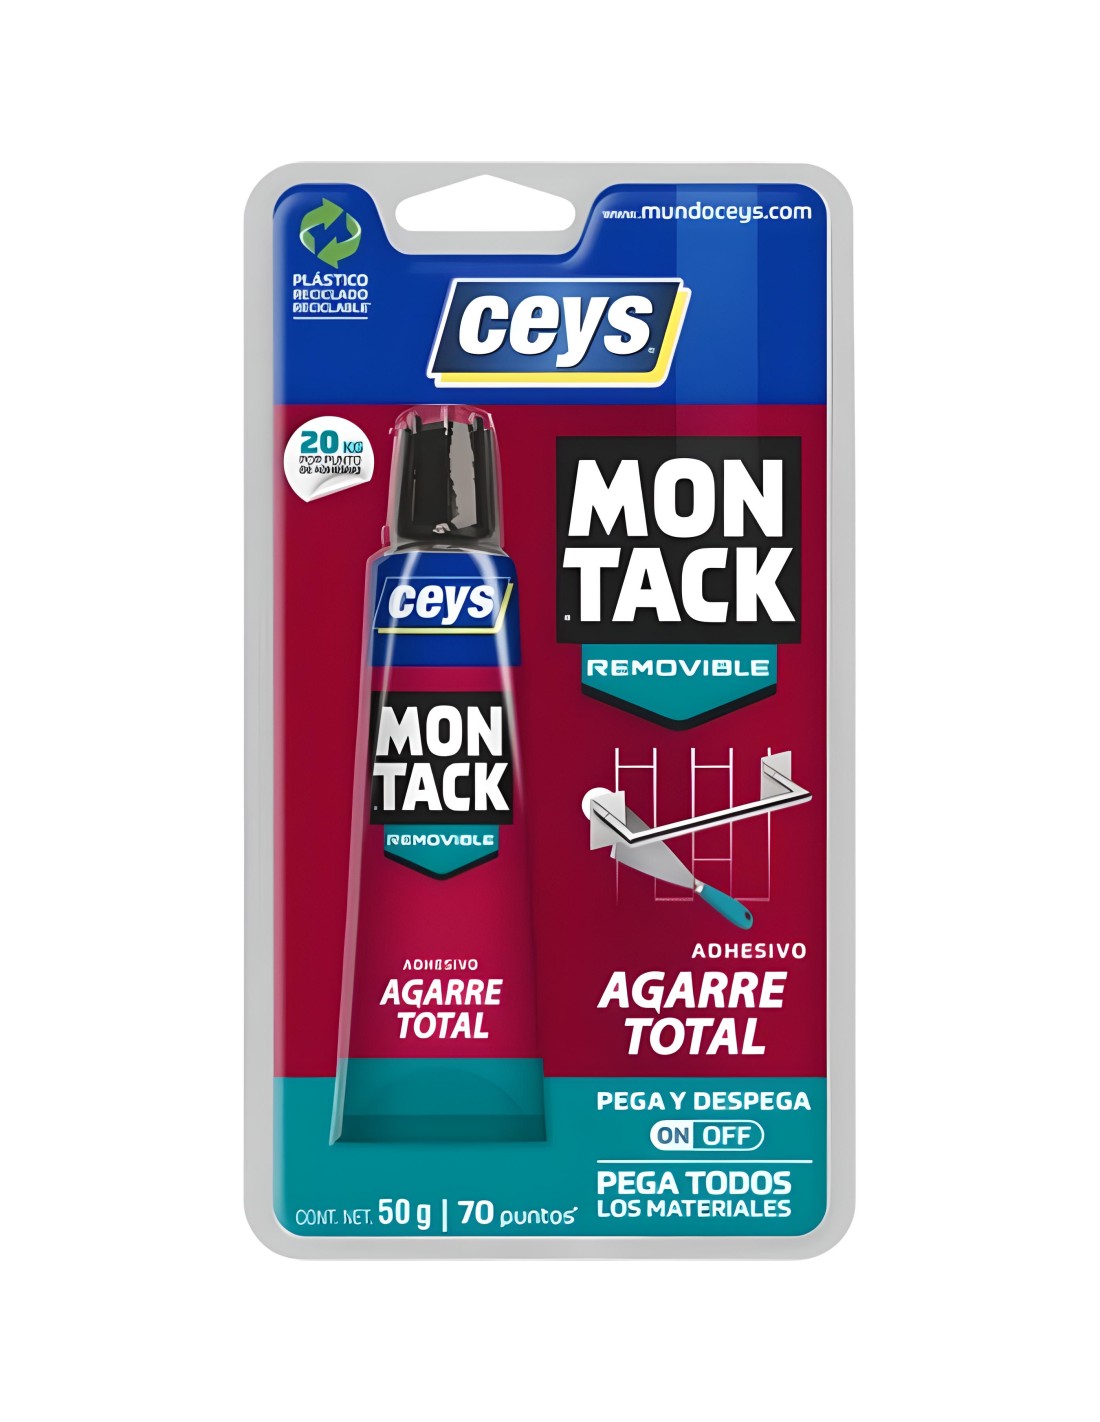 Adhesivo Montaje Ceys Montack 450 g